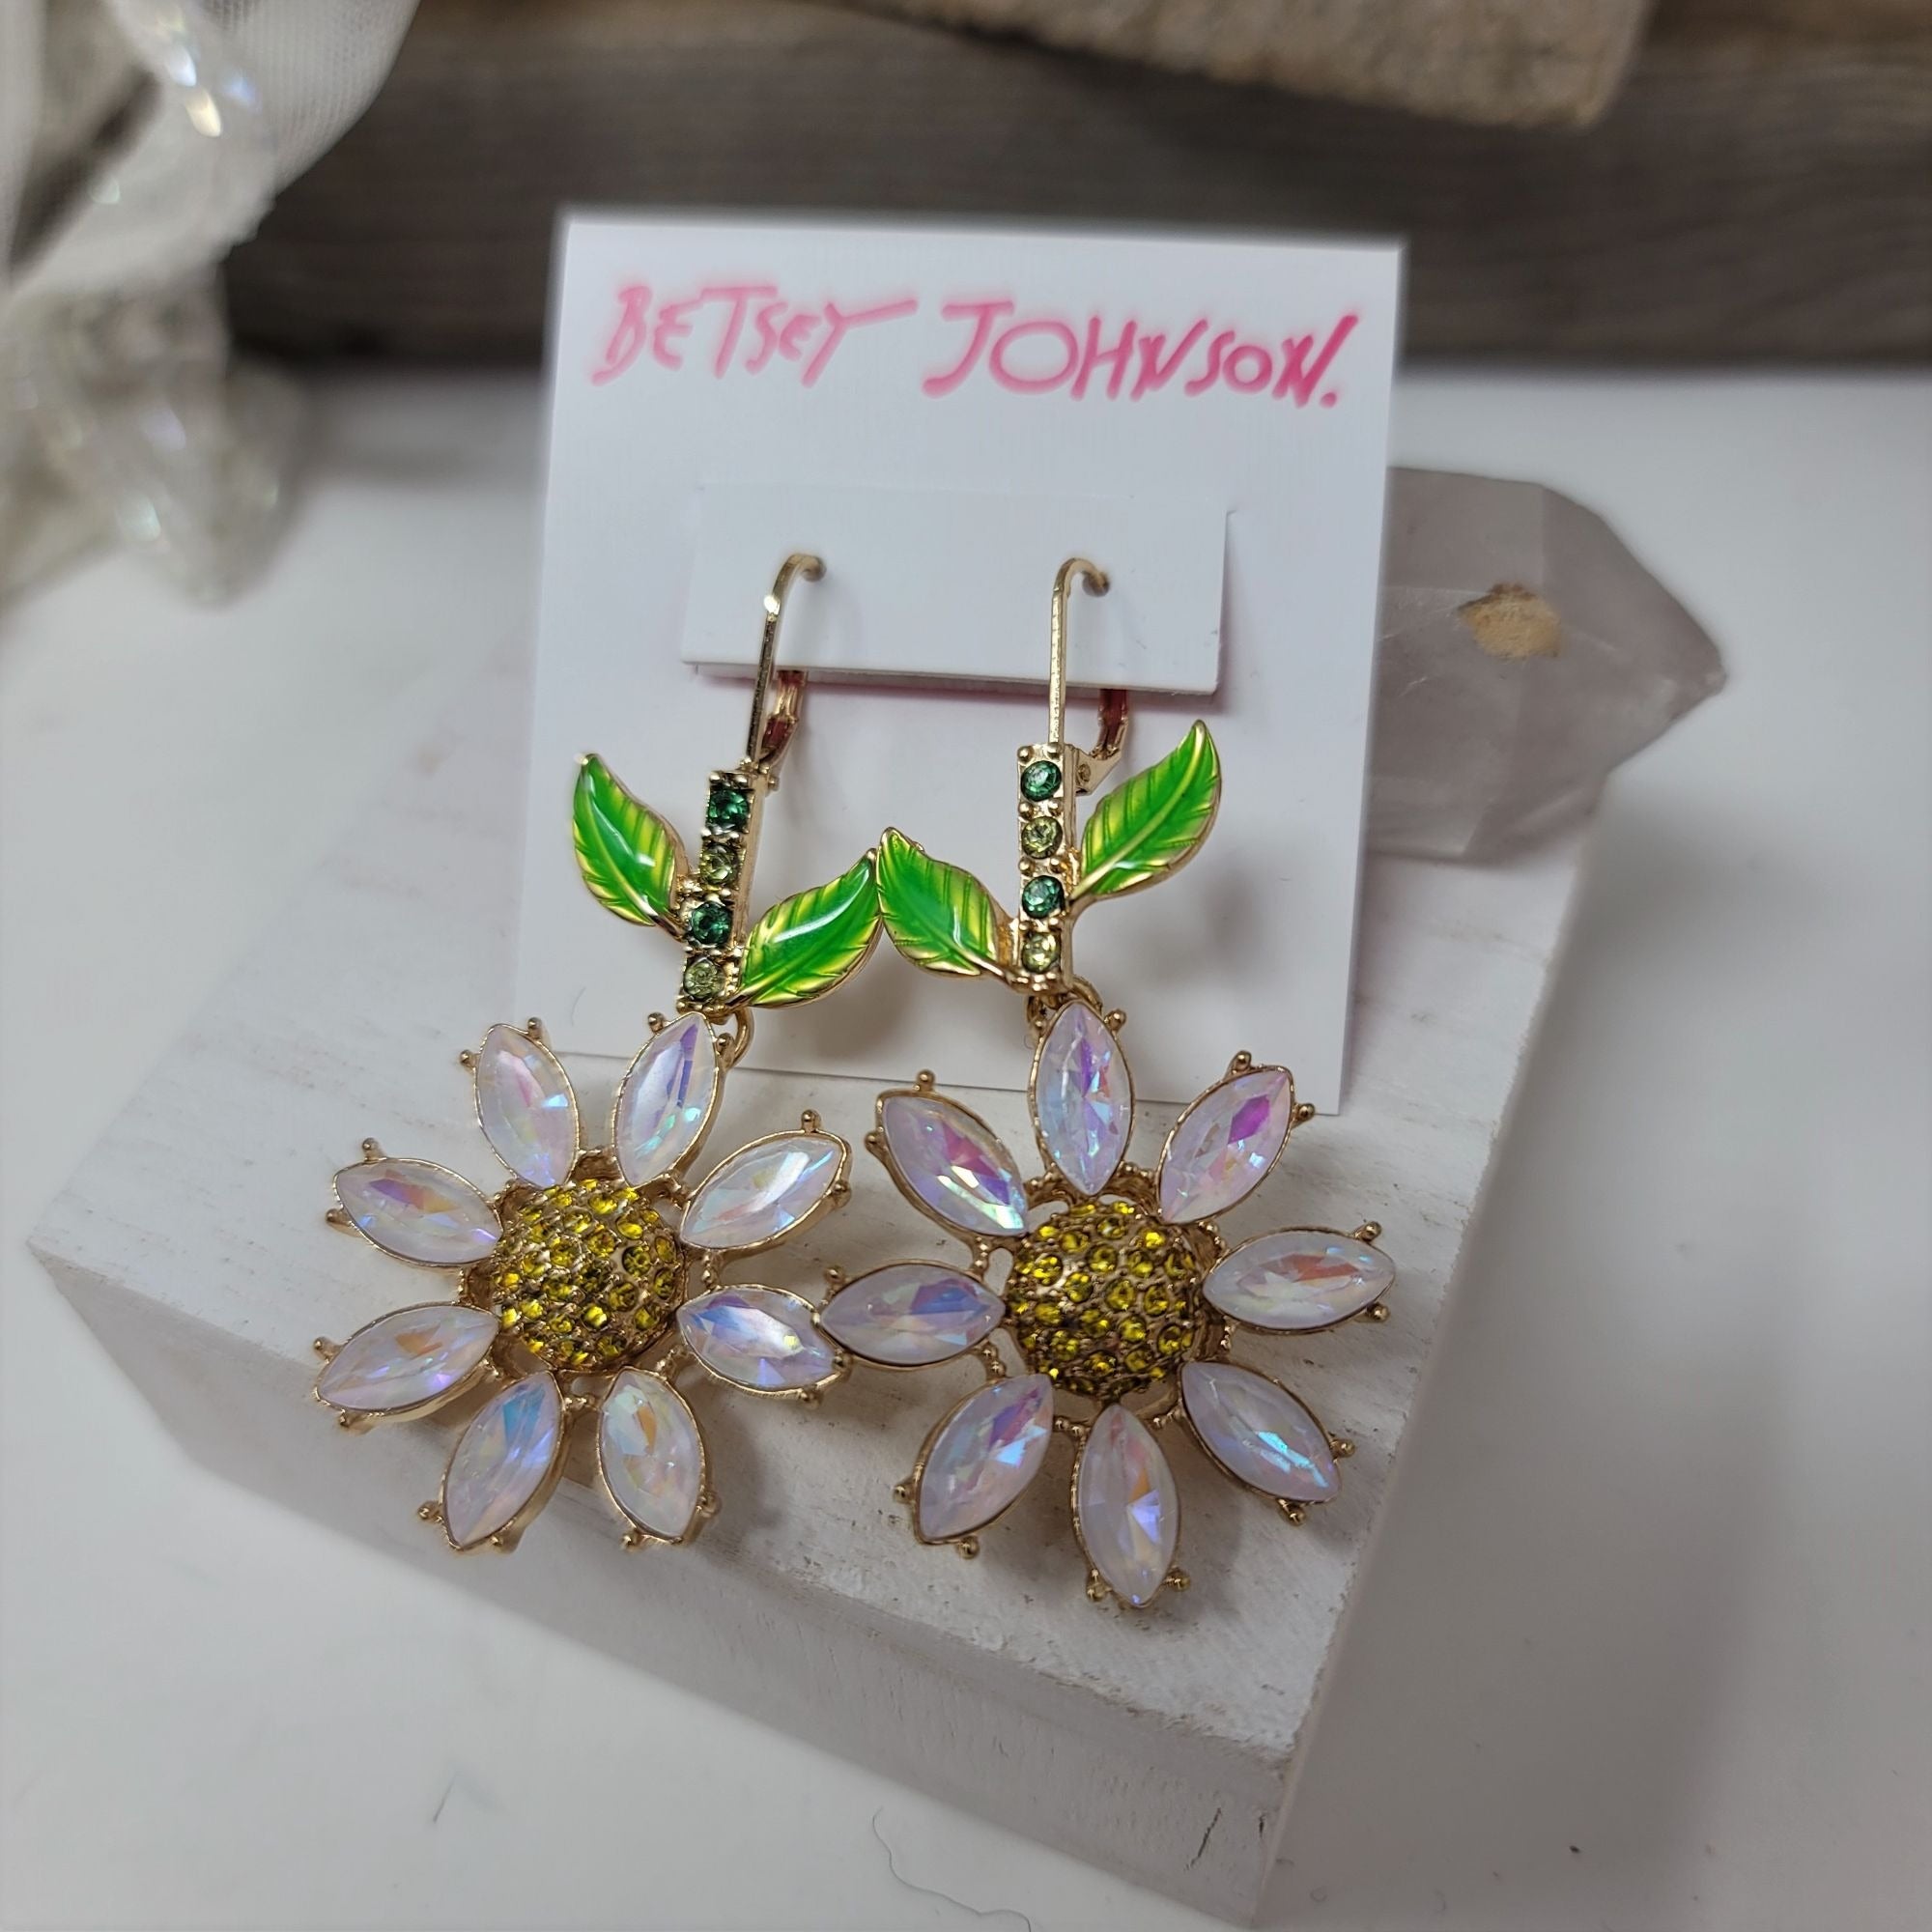 Betsey Johnson Rhinestone Flower Earrings Pierced Levier Backs